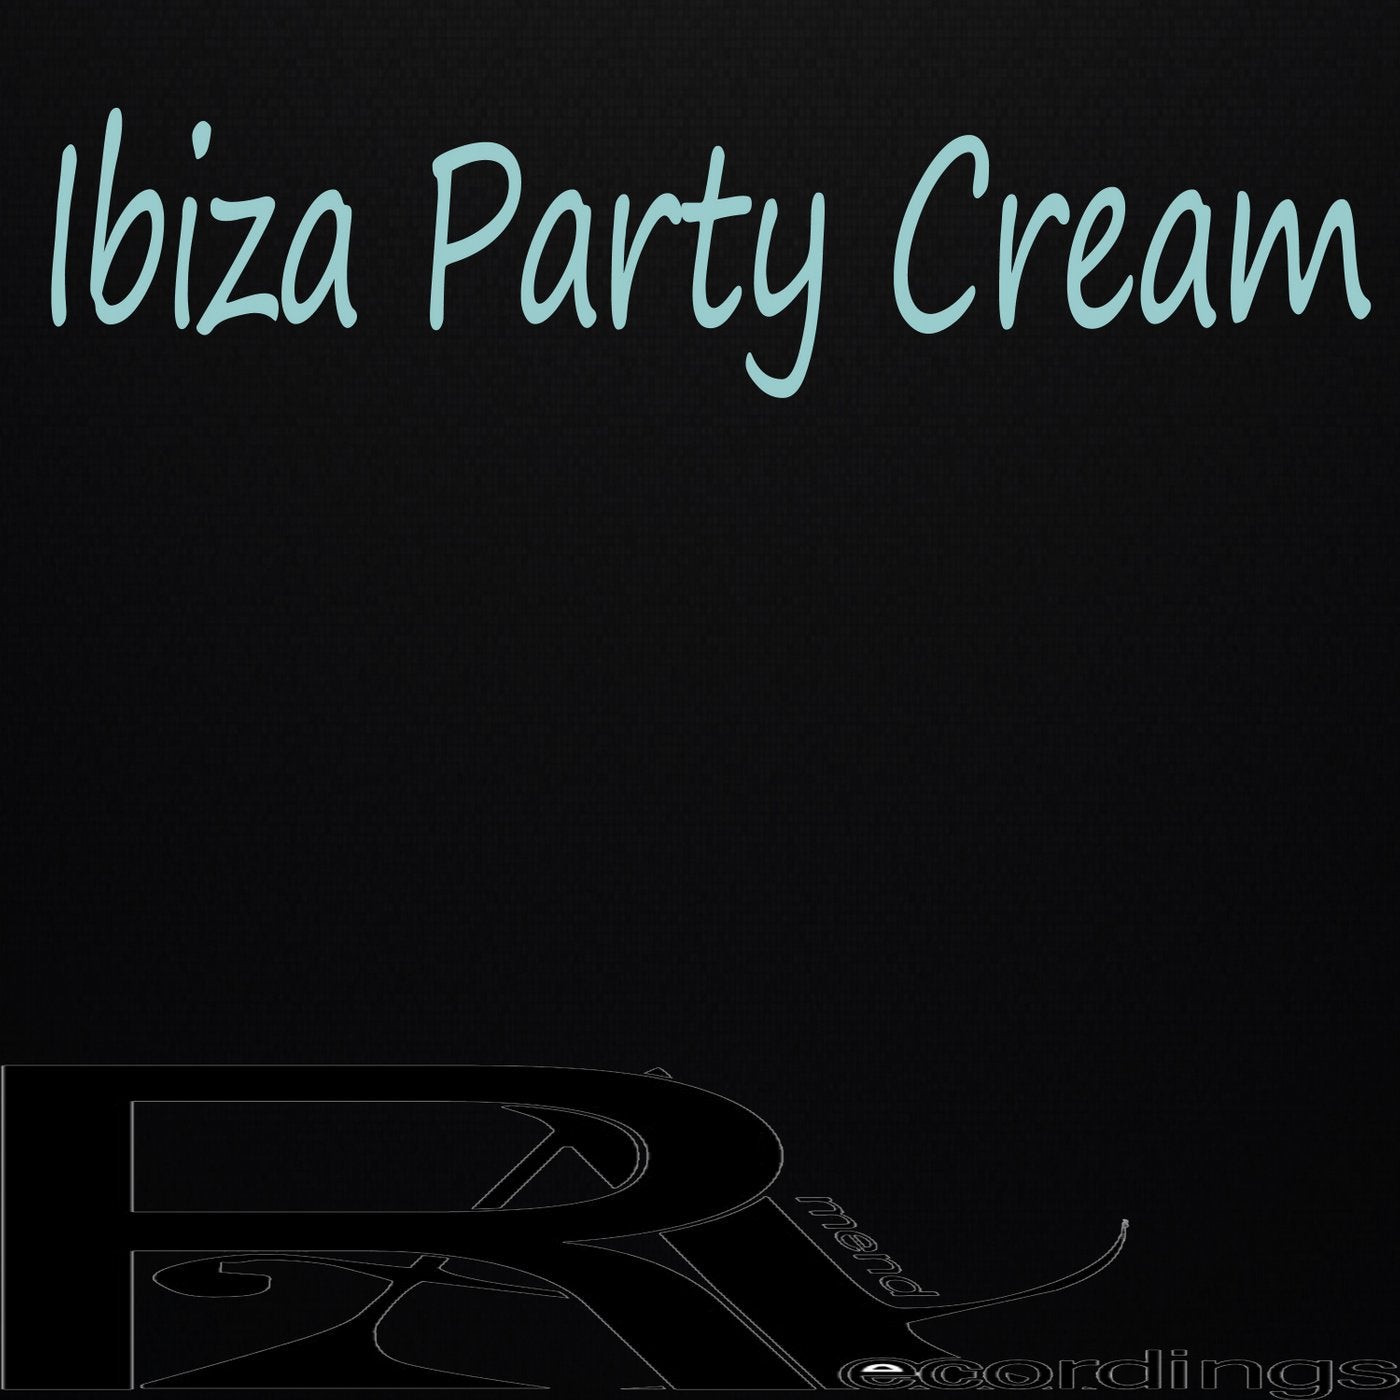 Ibiza Party Cream